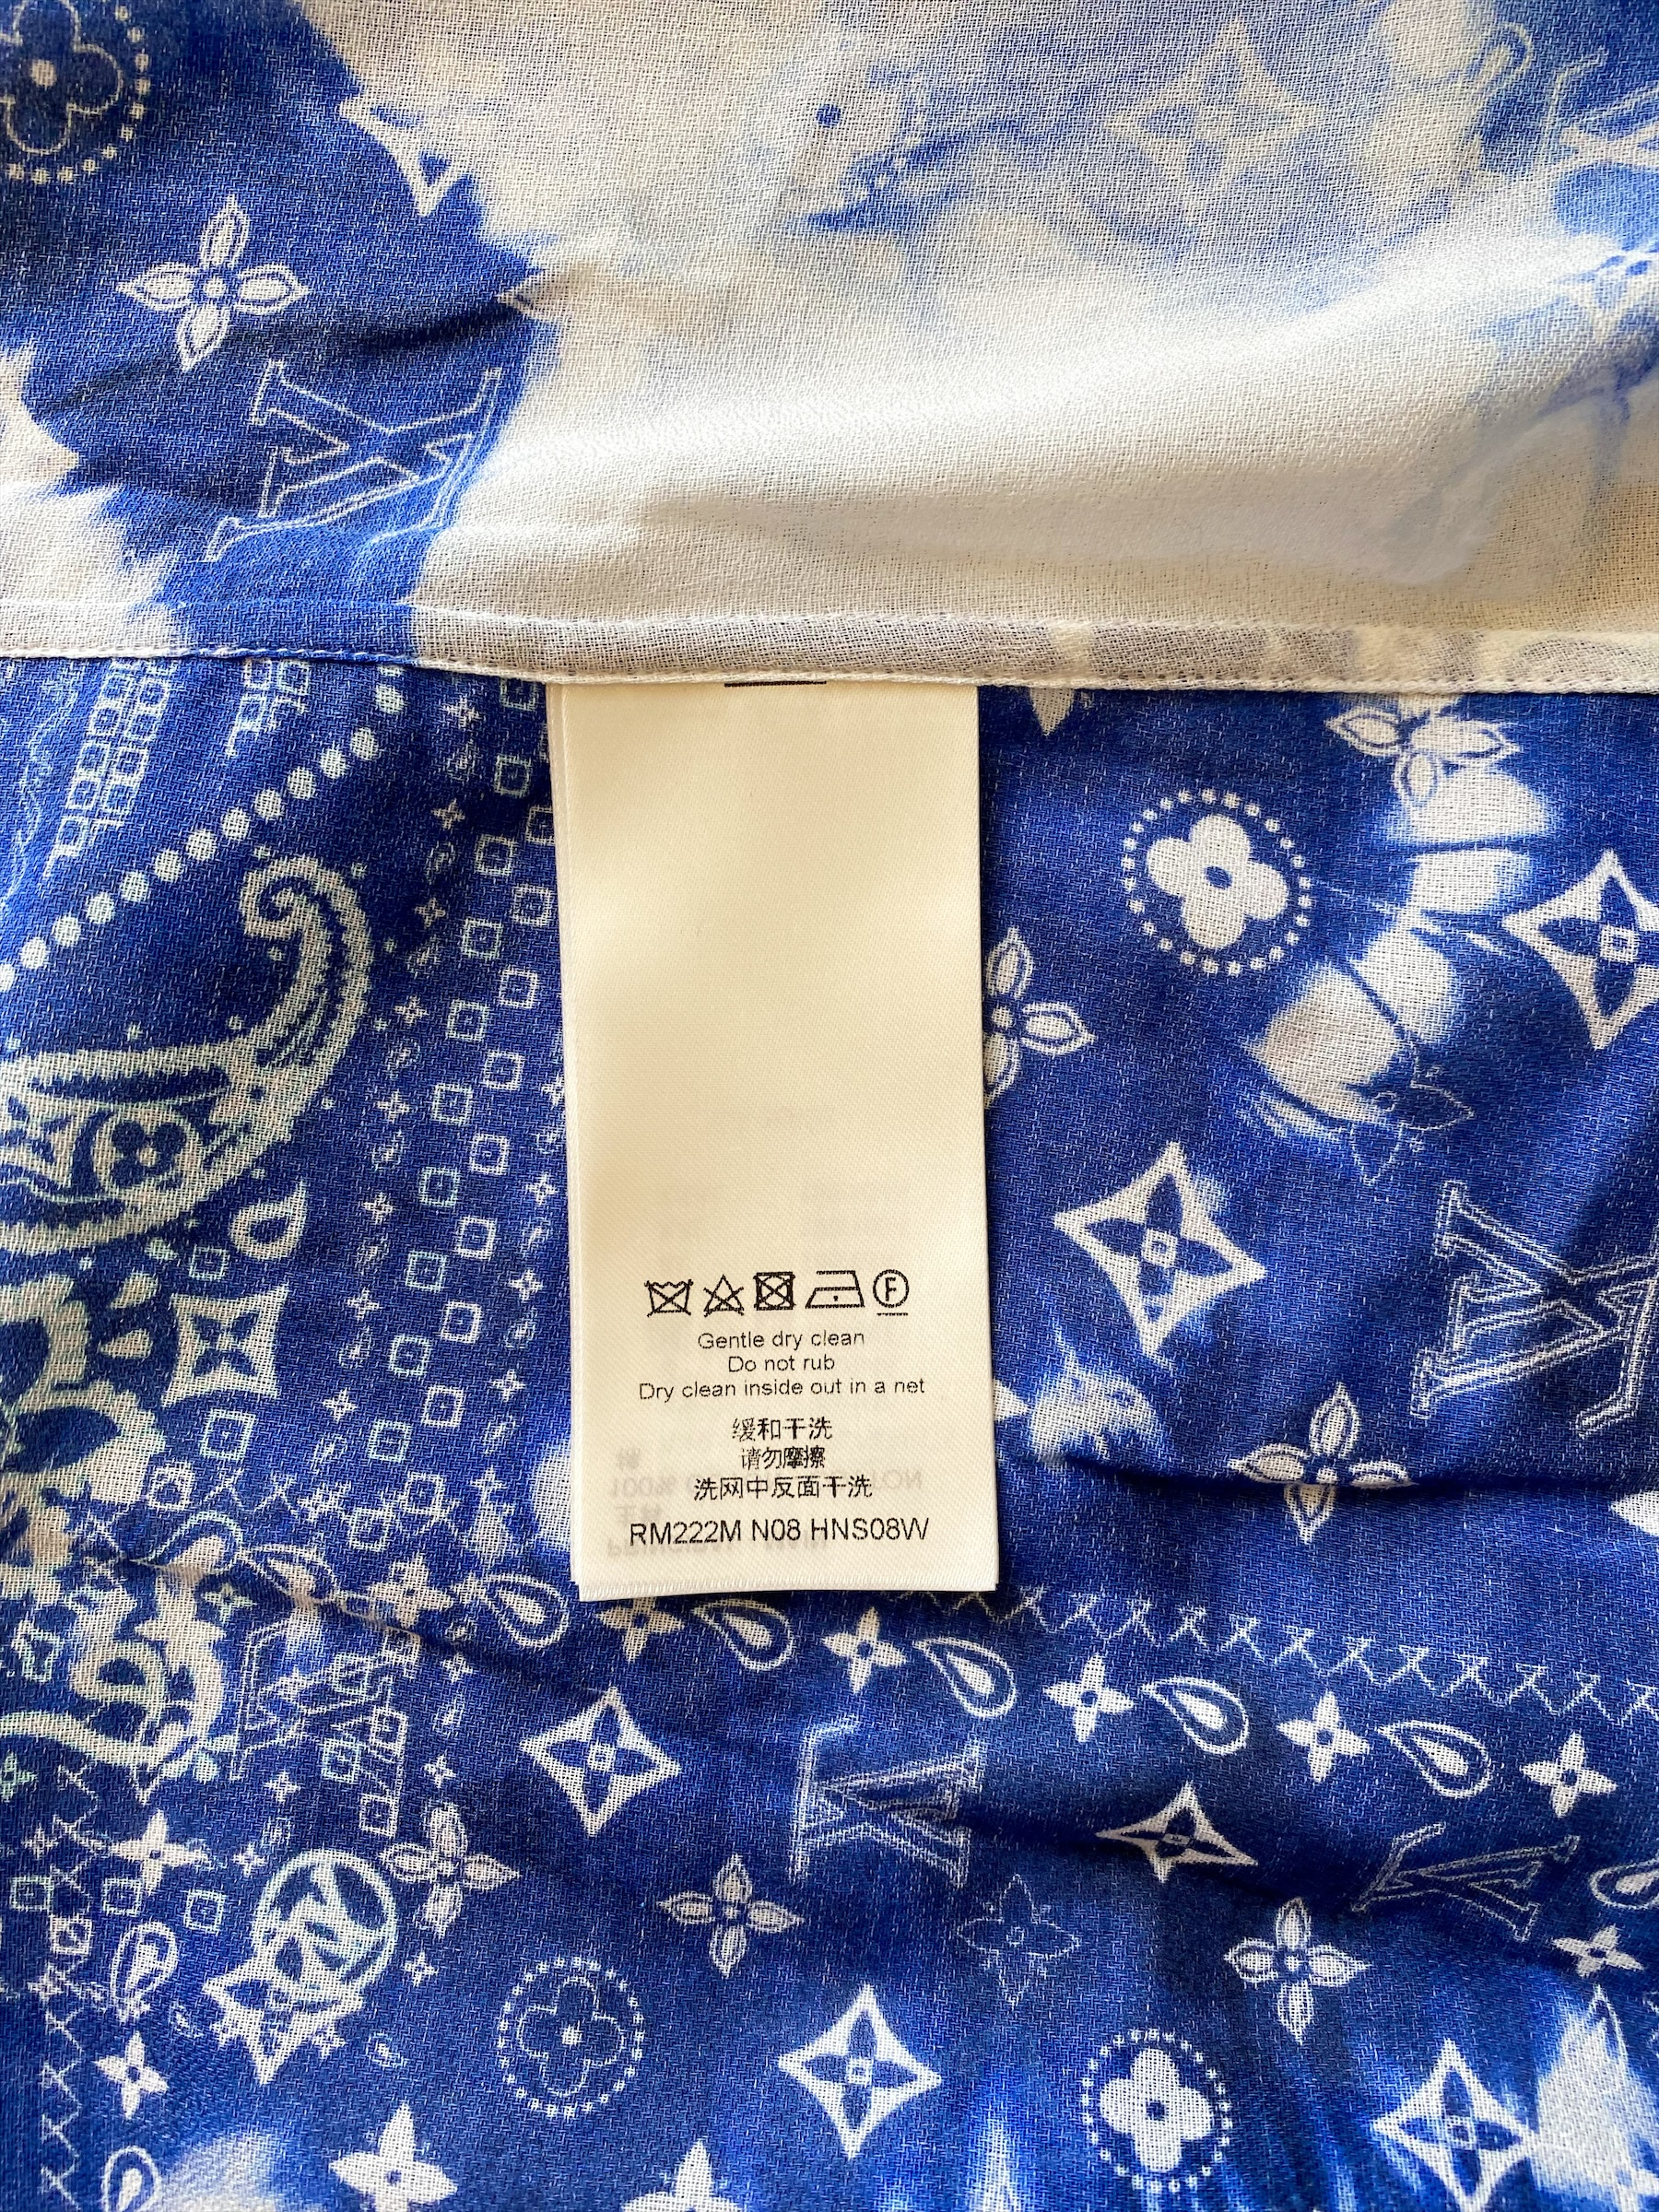 Louis Vuitton 2022 Bandana Shirt - Blue Casual Shirts, Clothing - LOU684894